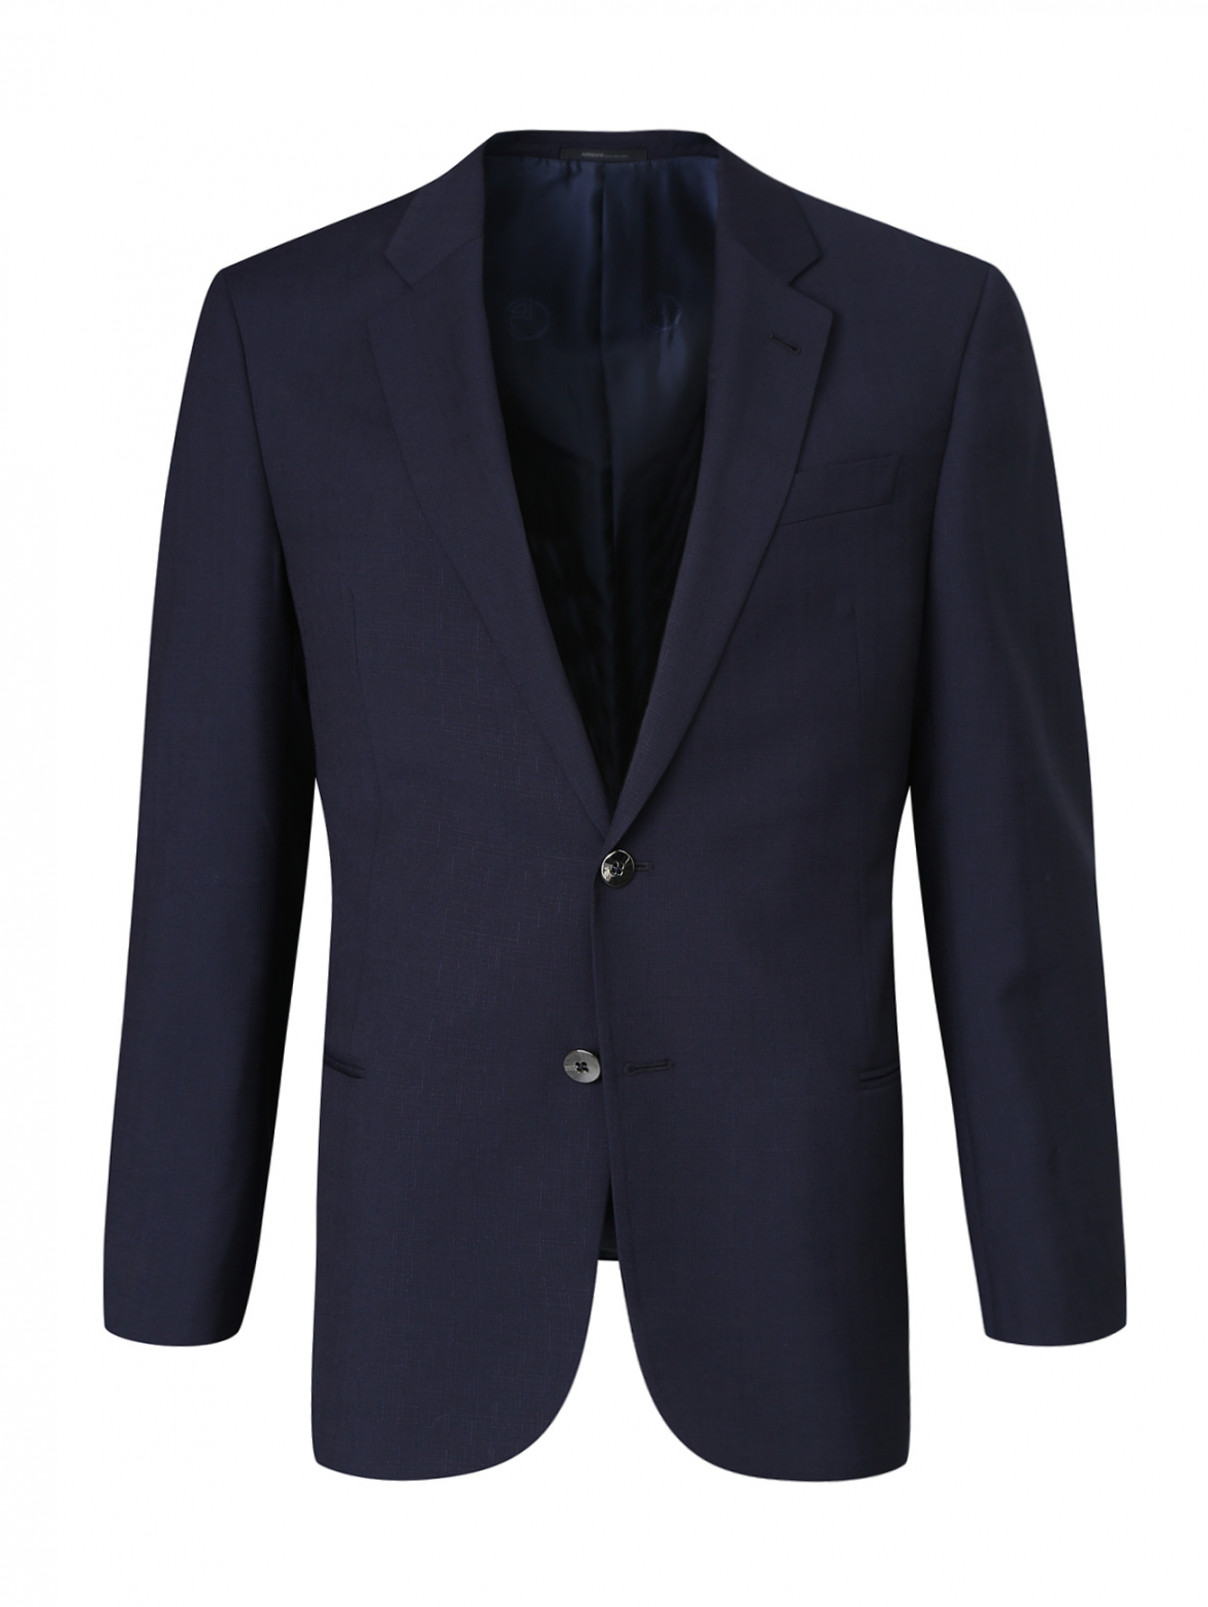 Пиджак из шерсти Armani Collezioni  –  Общий вид  – Цвет:  Синий